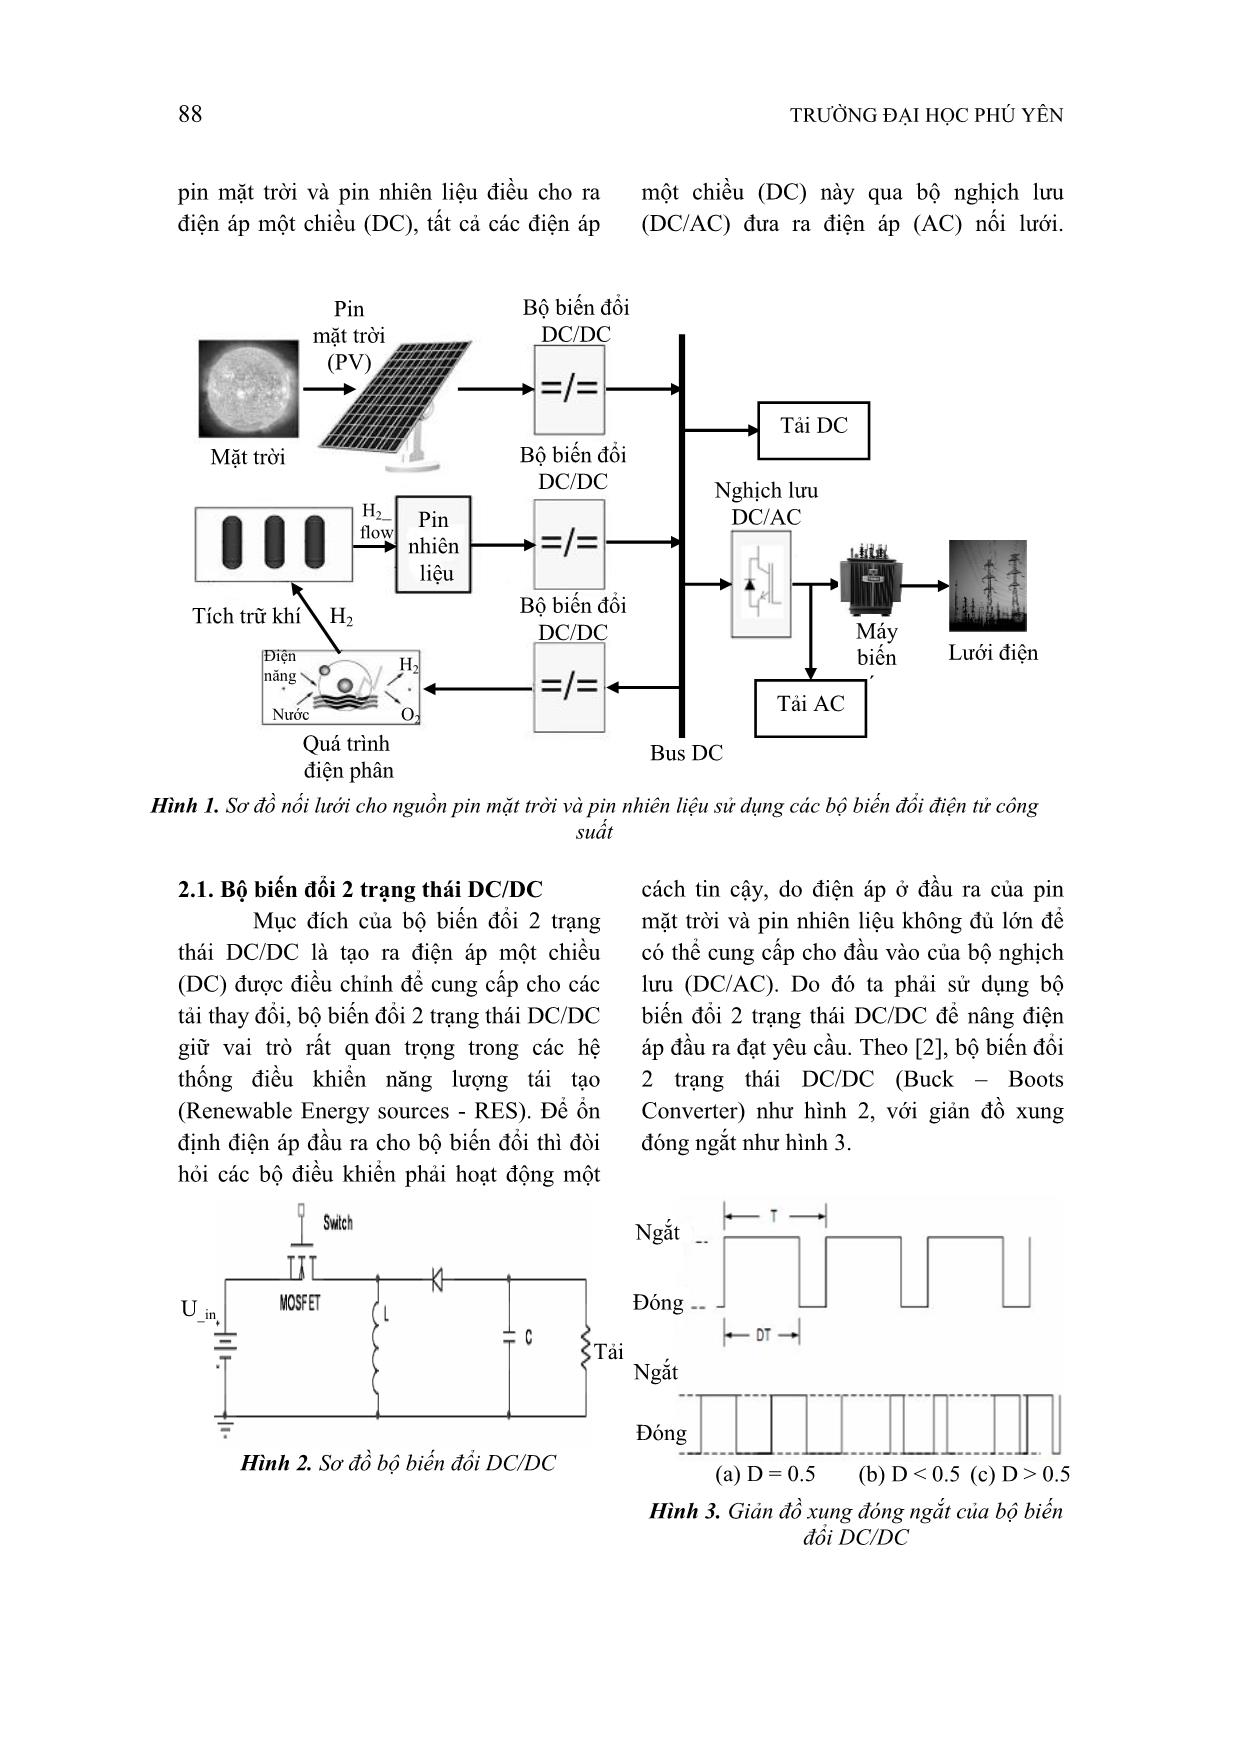 Ứng dụng các bộ biến đổi điện tử công suất trong điều khiển nối lưới cho nguồn pin mặt trời và pin nhiên liệu trang 2